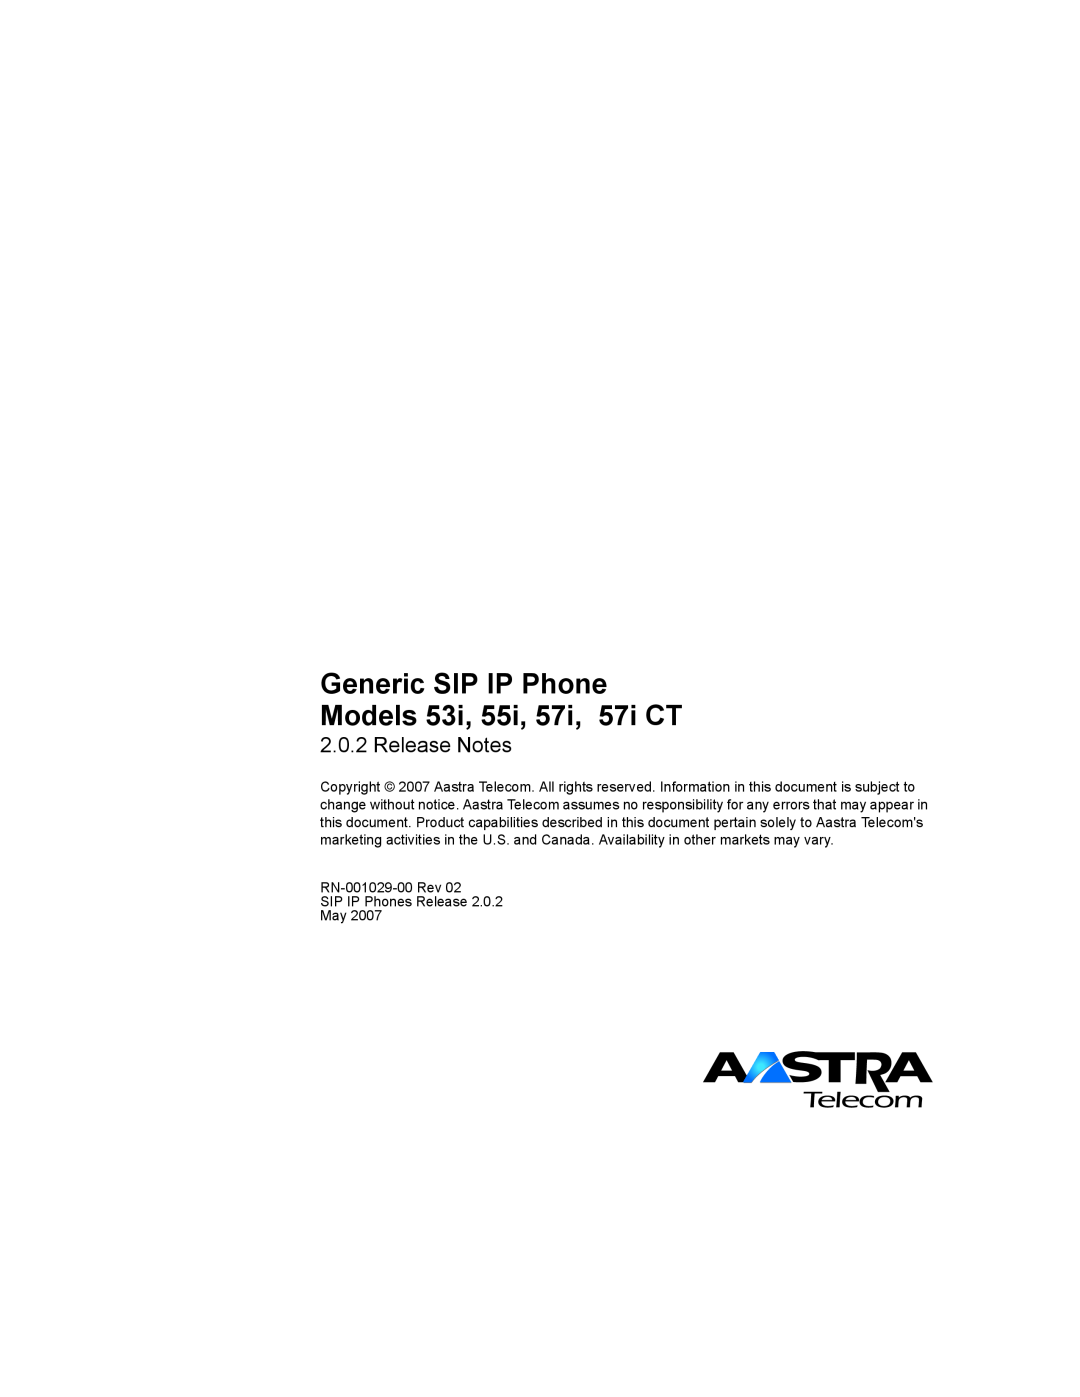 Aastra Telecom 57I CT, 55I manual Generic SIP IP Phone Models 53i, 55i, 57i, 57i CT, Release Notes 